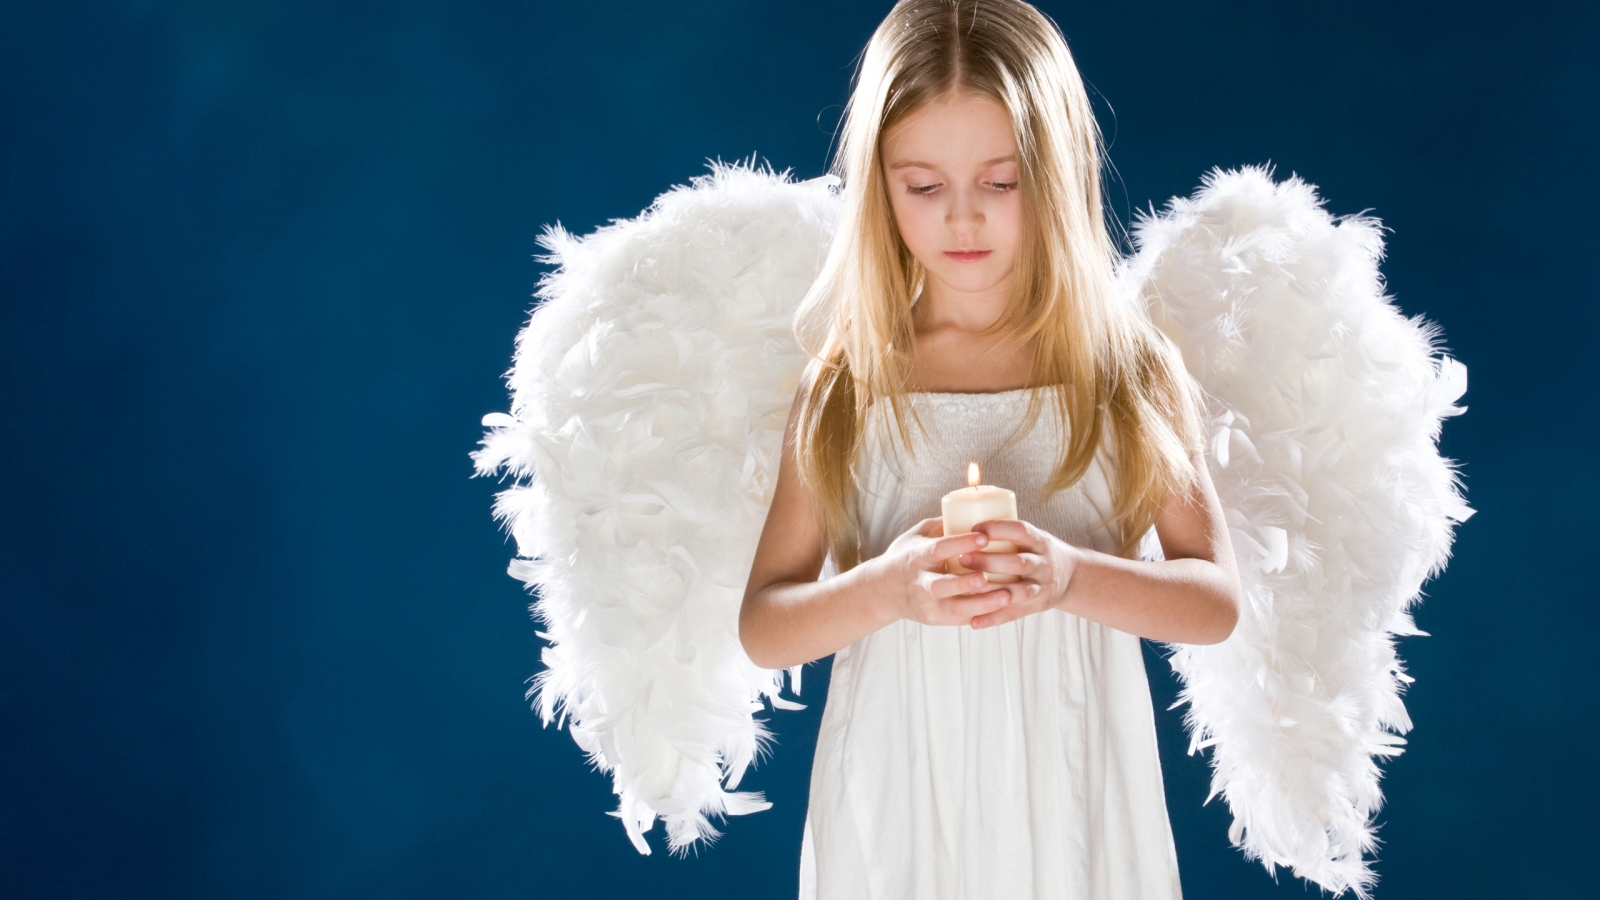 Little Angel Girl for 1600 x 900 HDTV resolution